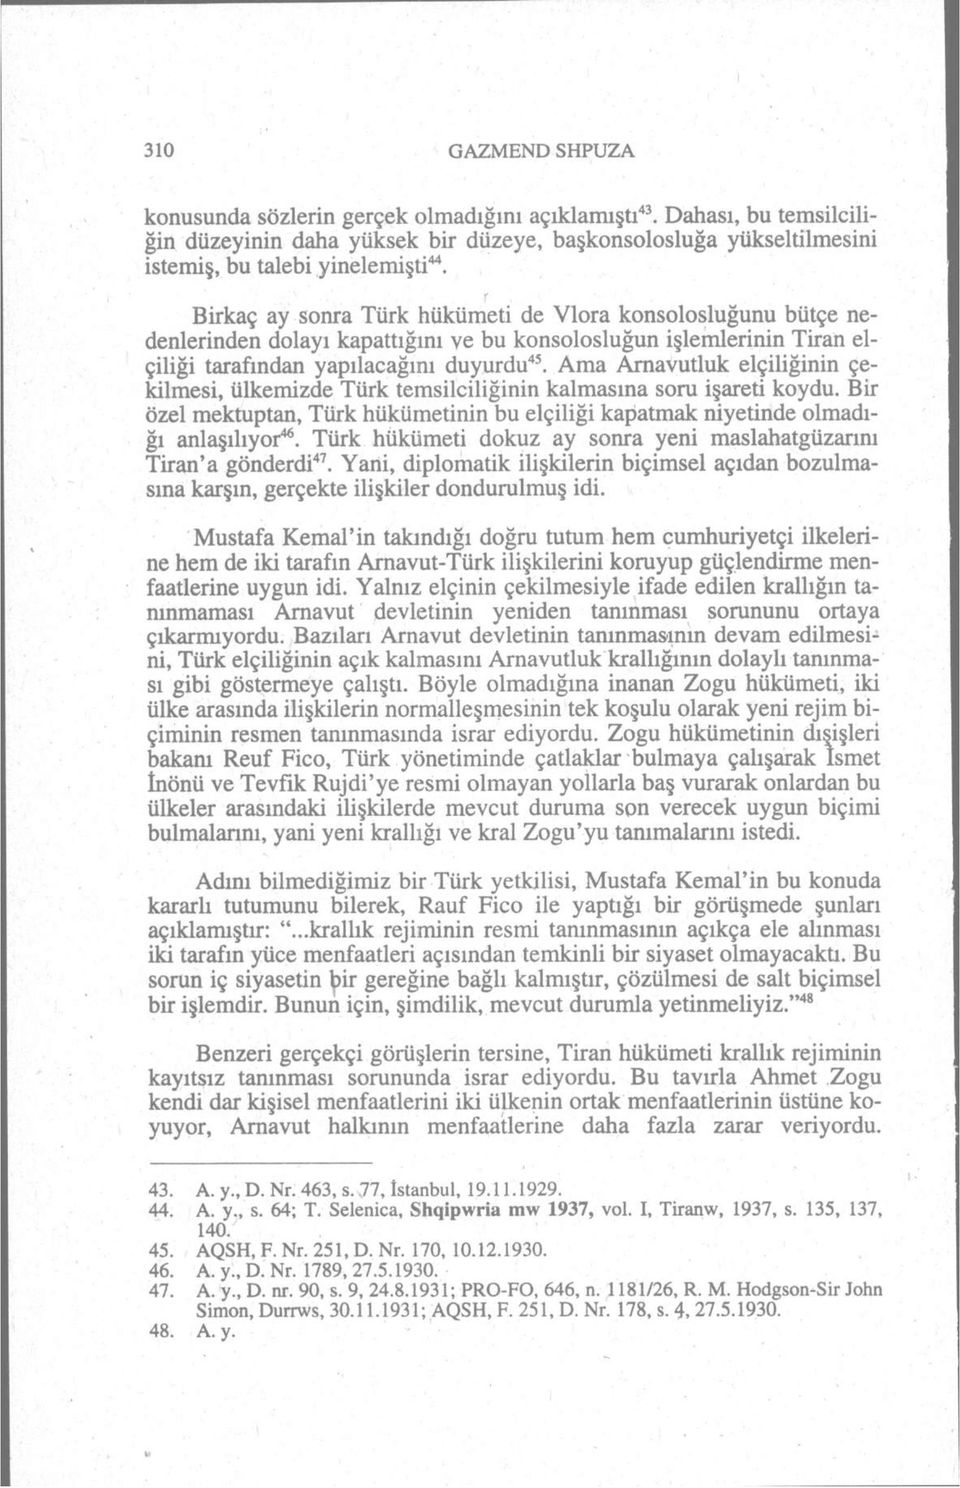 Ama Arnavutluk elçiliğinin çekilmesi, ülkemizde Türk temsilciliğinin kalmasına soru işareti koydu. Bir özel mektuptan, Türk hükümetinin bu elçiliği kapatmak niyetinde olmadığı anlaşılıyor 46.